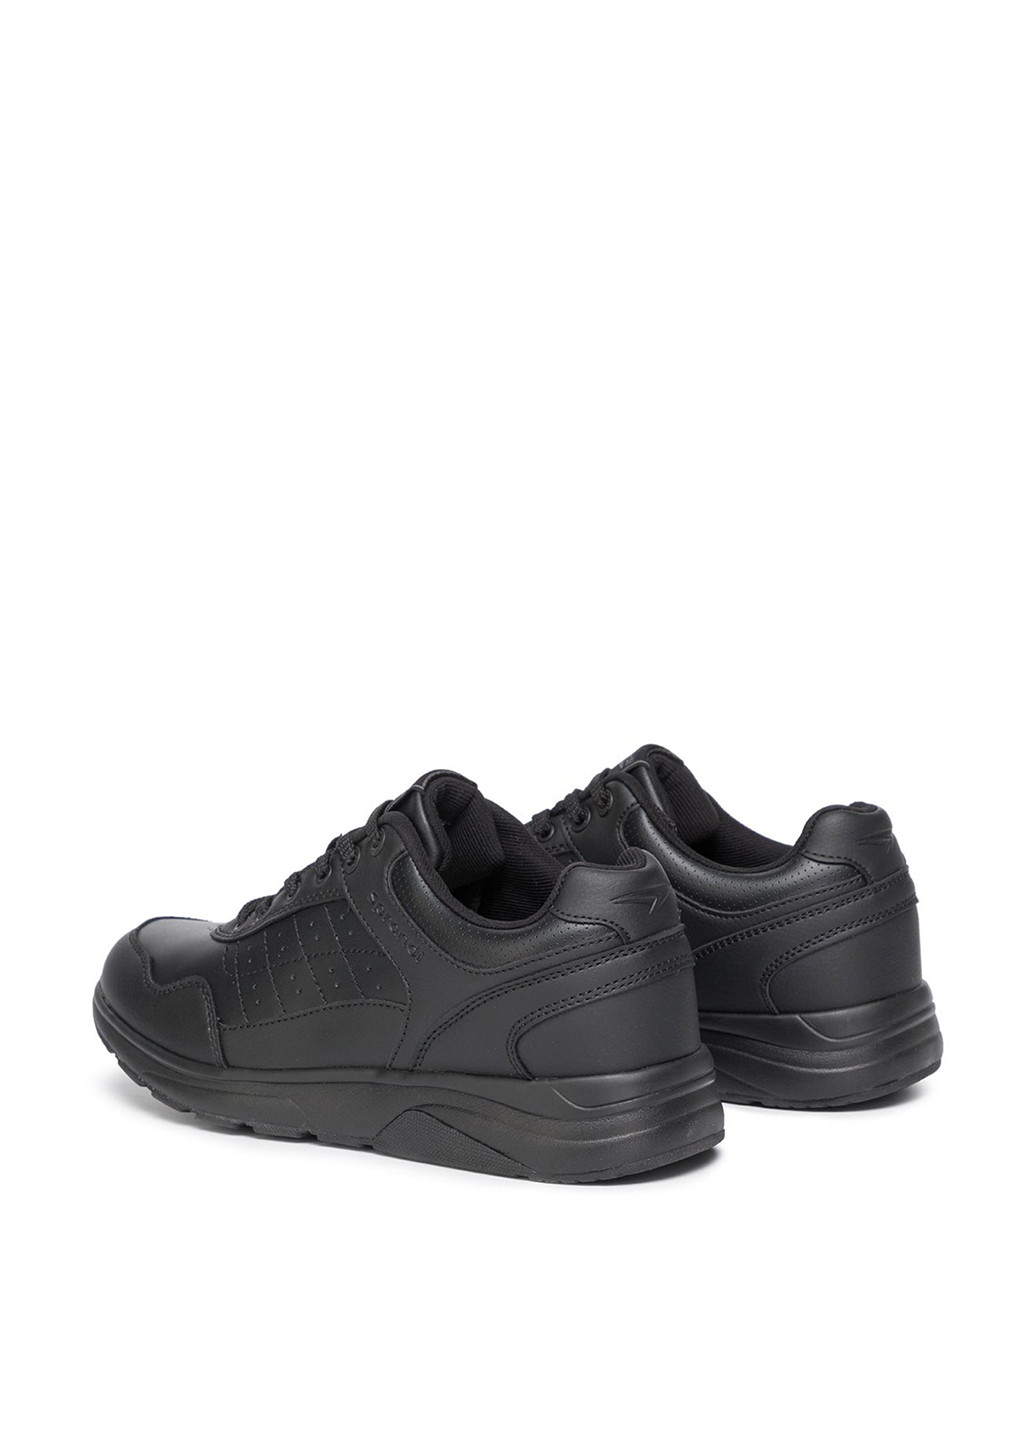 Черные демисезонные кросівки Sprandi MP07-81165-01